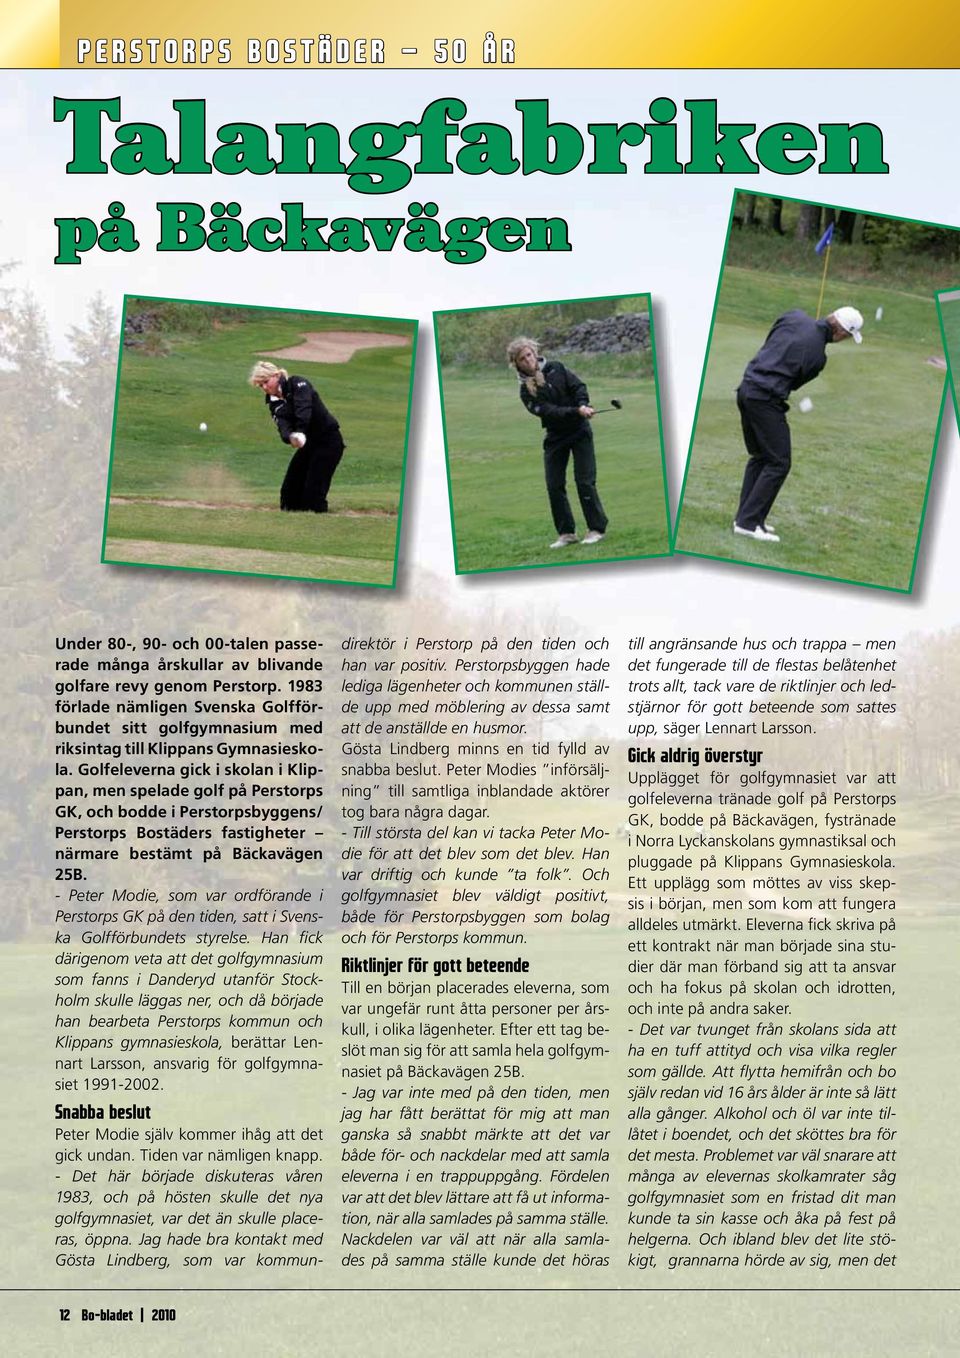 Golfeleverna gick i skolan i Klippan, men spelade golf på Perstorps GK, och bodde i Perstorpsbyggens/ Perstorps Bostäders fastigheter närmare bestämt på Bäckavägen 25B.